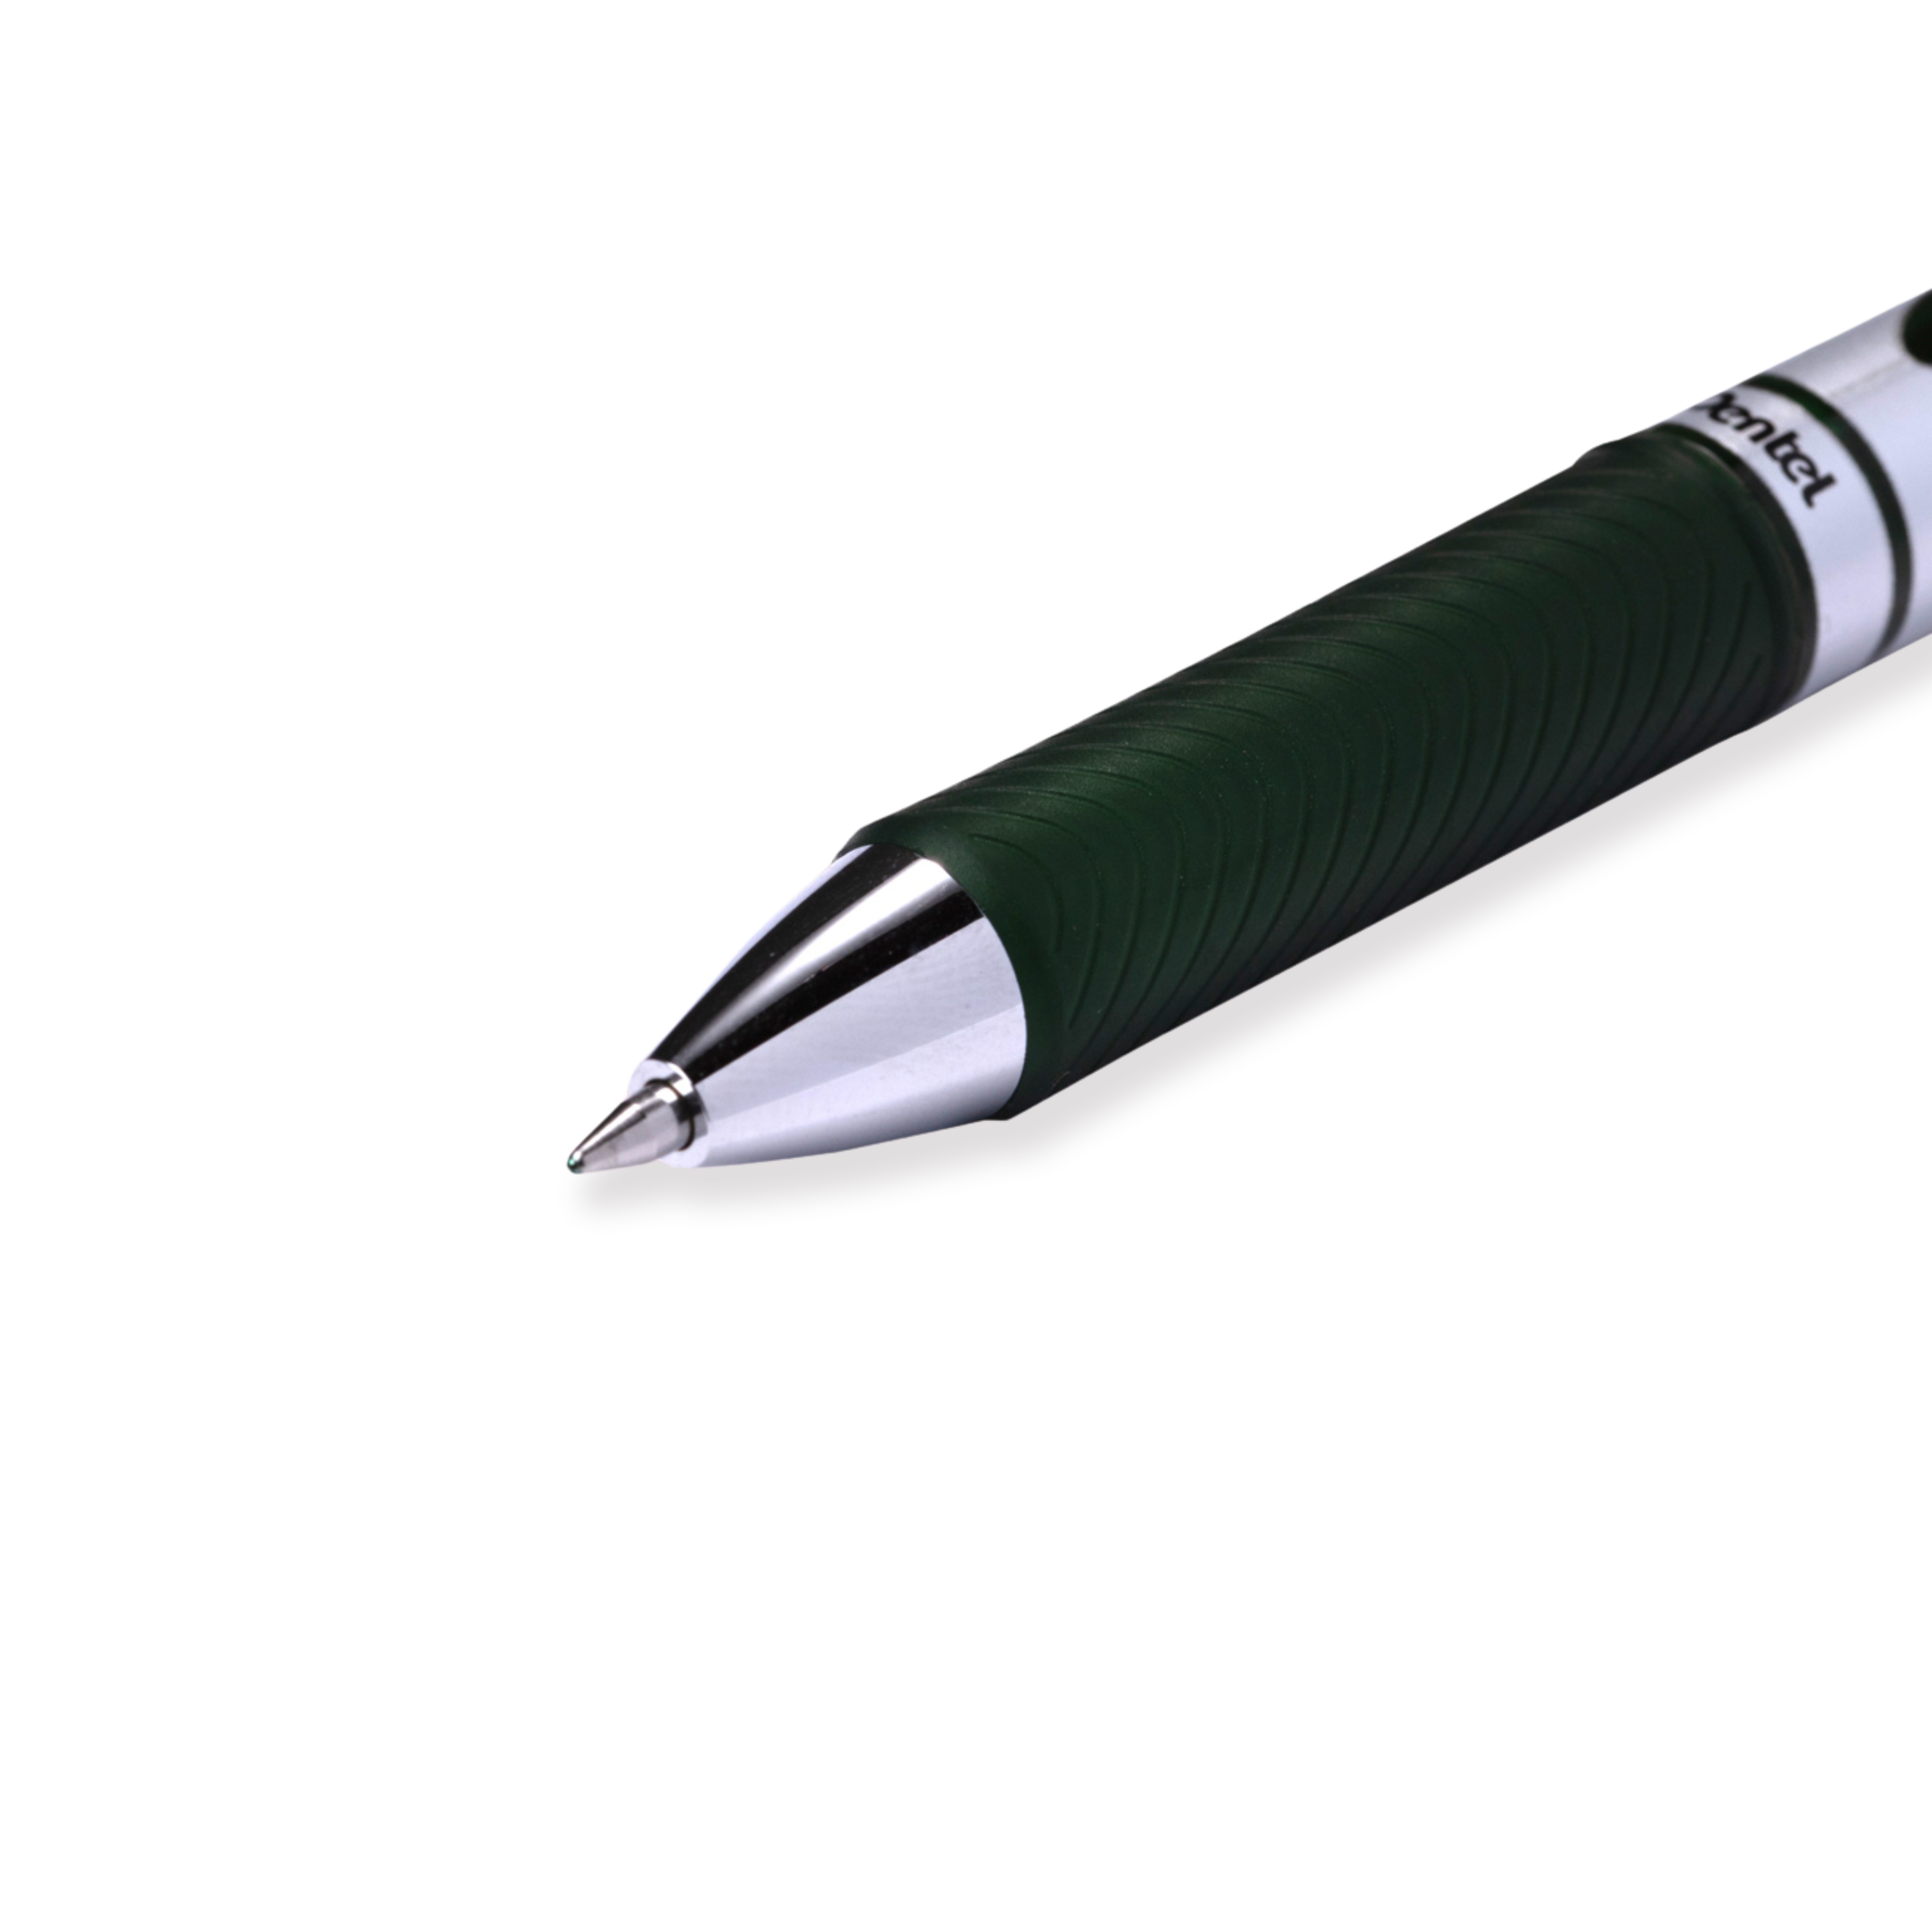 Pentel EnerGel RTX Gel Pen - Conical - 0.7 mm - Forest Green